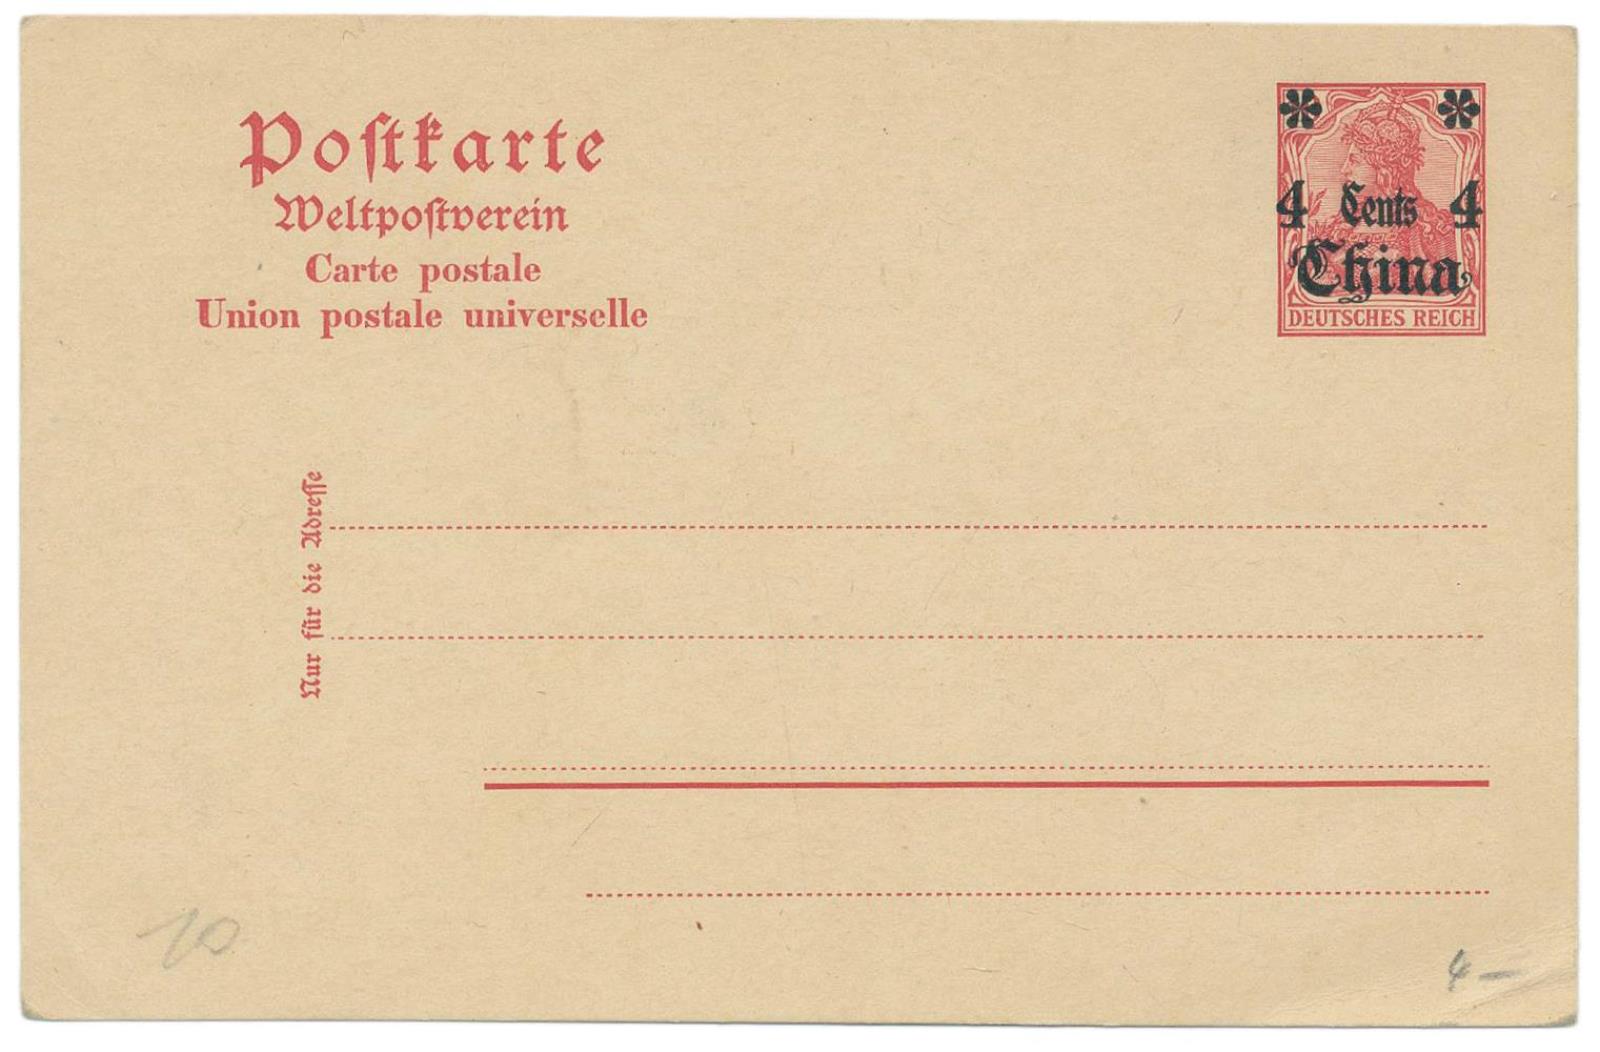 Briefmarken - Image 5 of 19